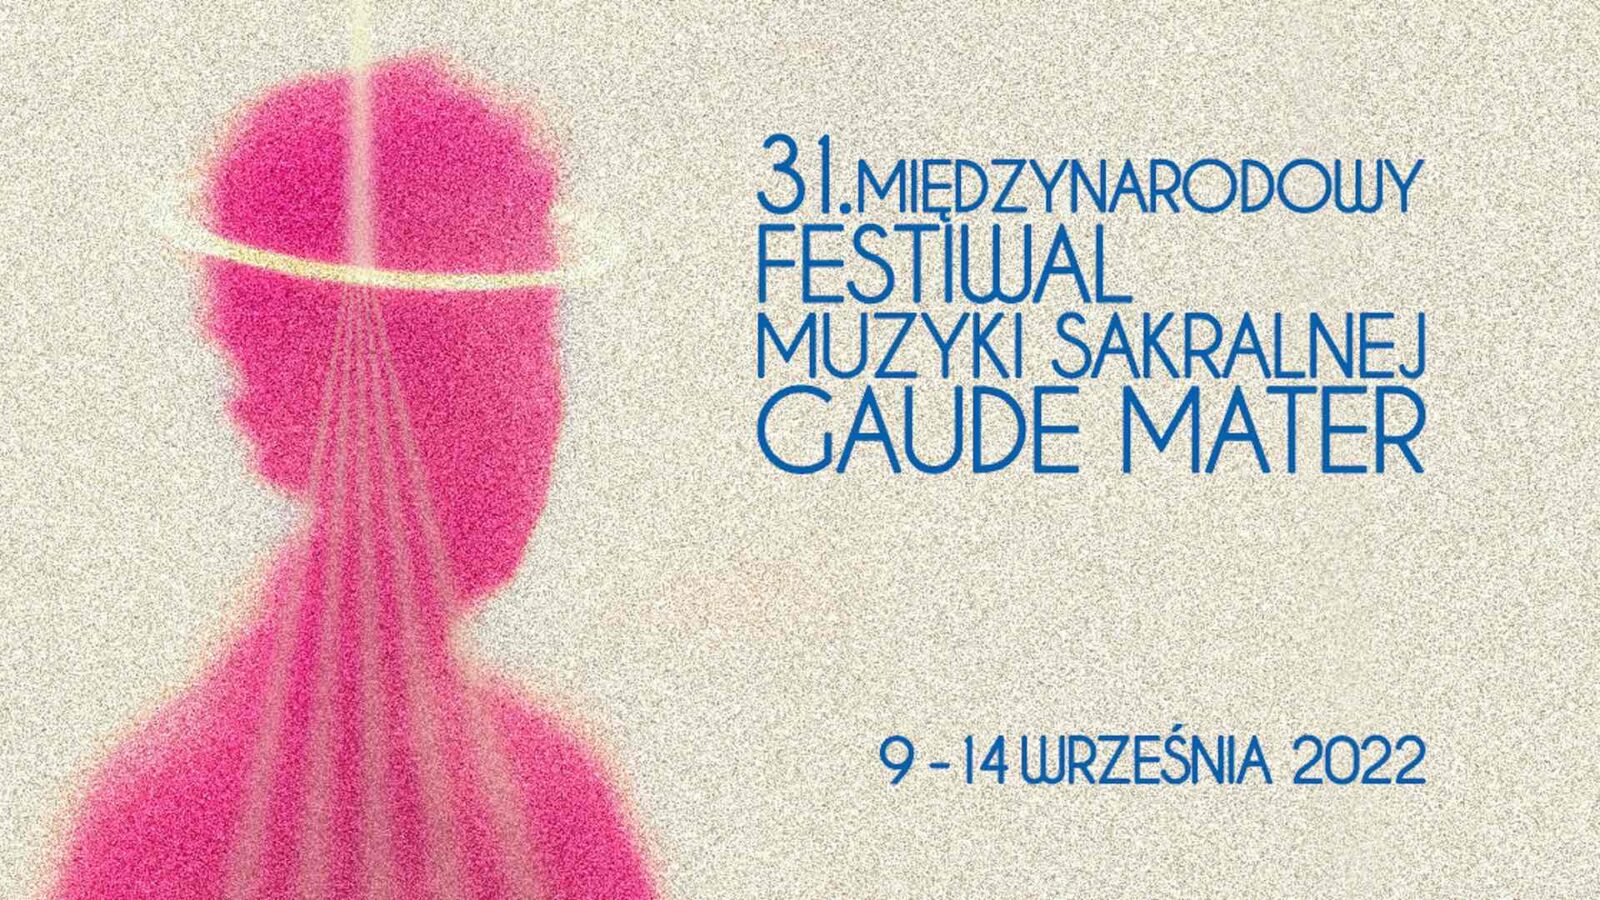 31. Międzynarodowy Festiwal Muzyki Sakralnej „Gaude Mater”. Koncerty odbędą się w Częstochowie i Wieluniu 1